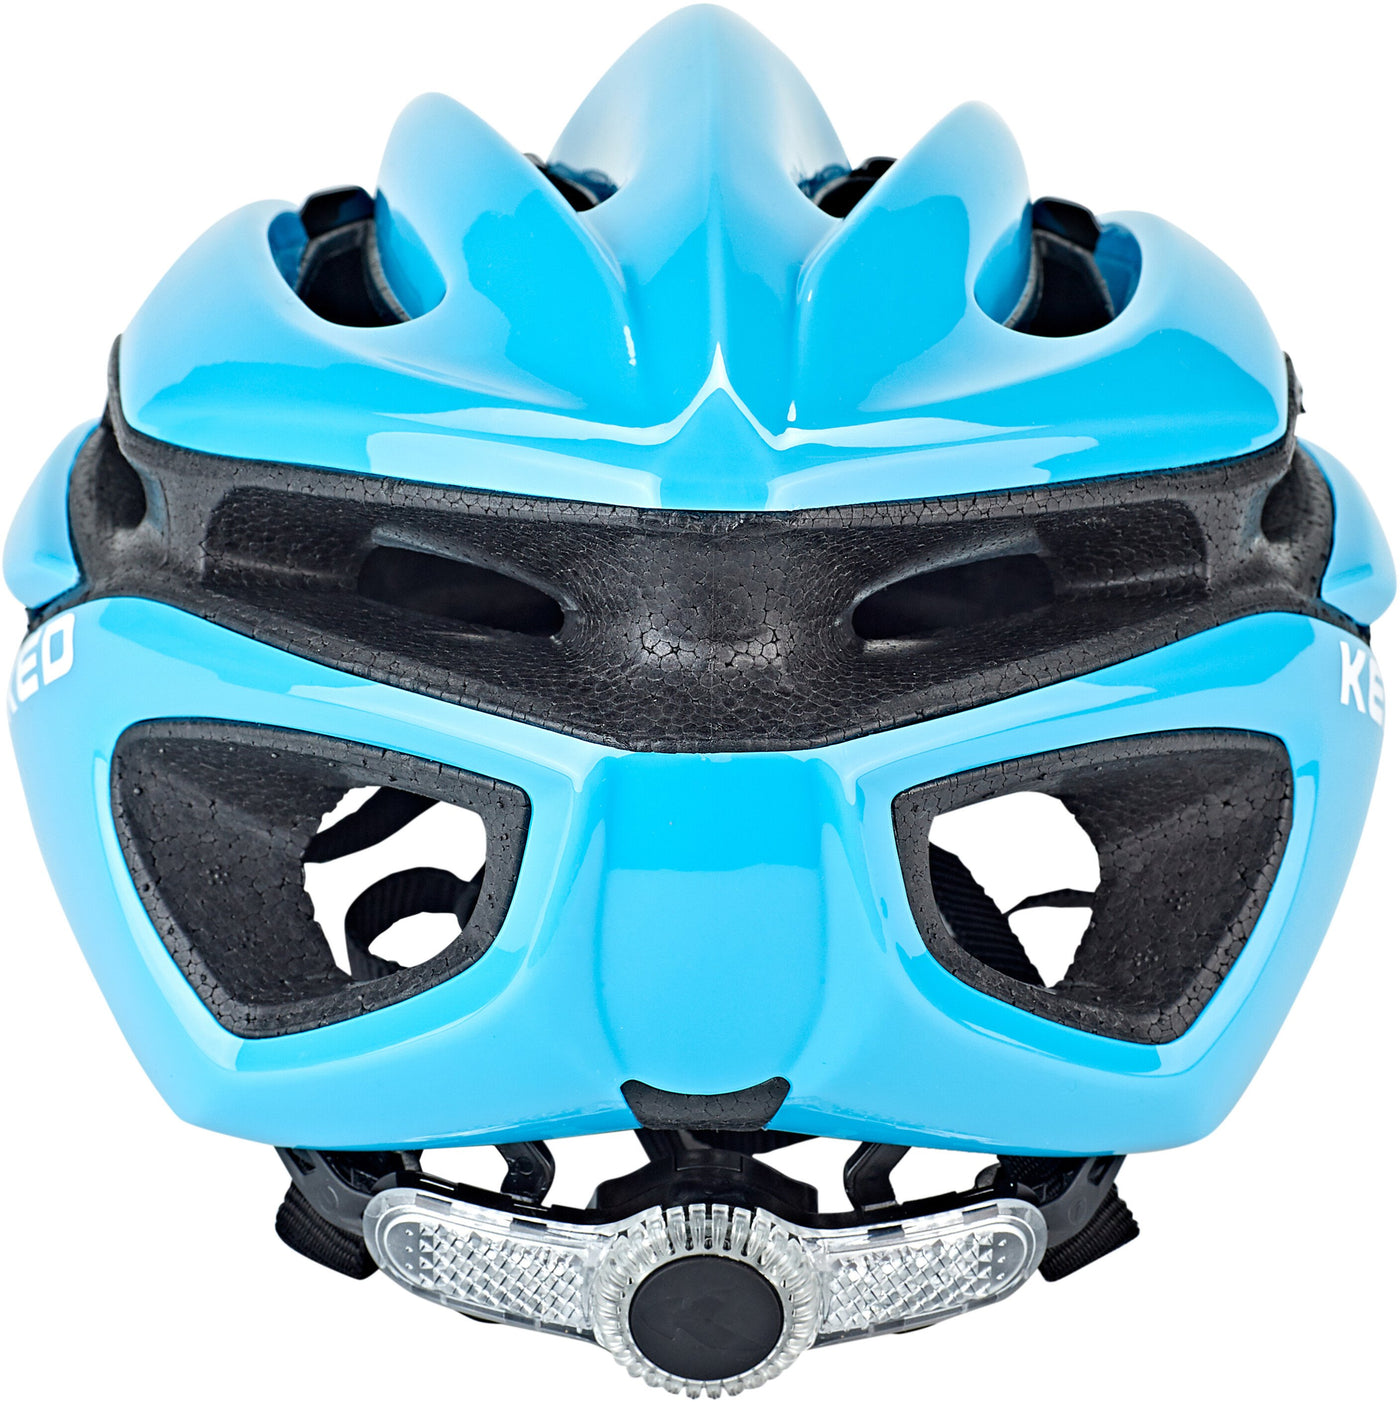 KED Rayzon Helmet - Cyclop.in